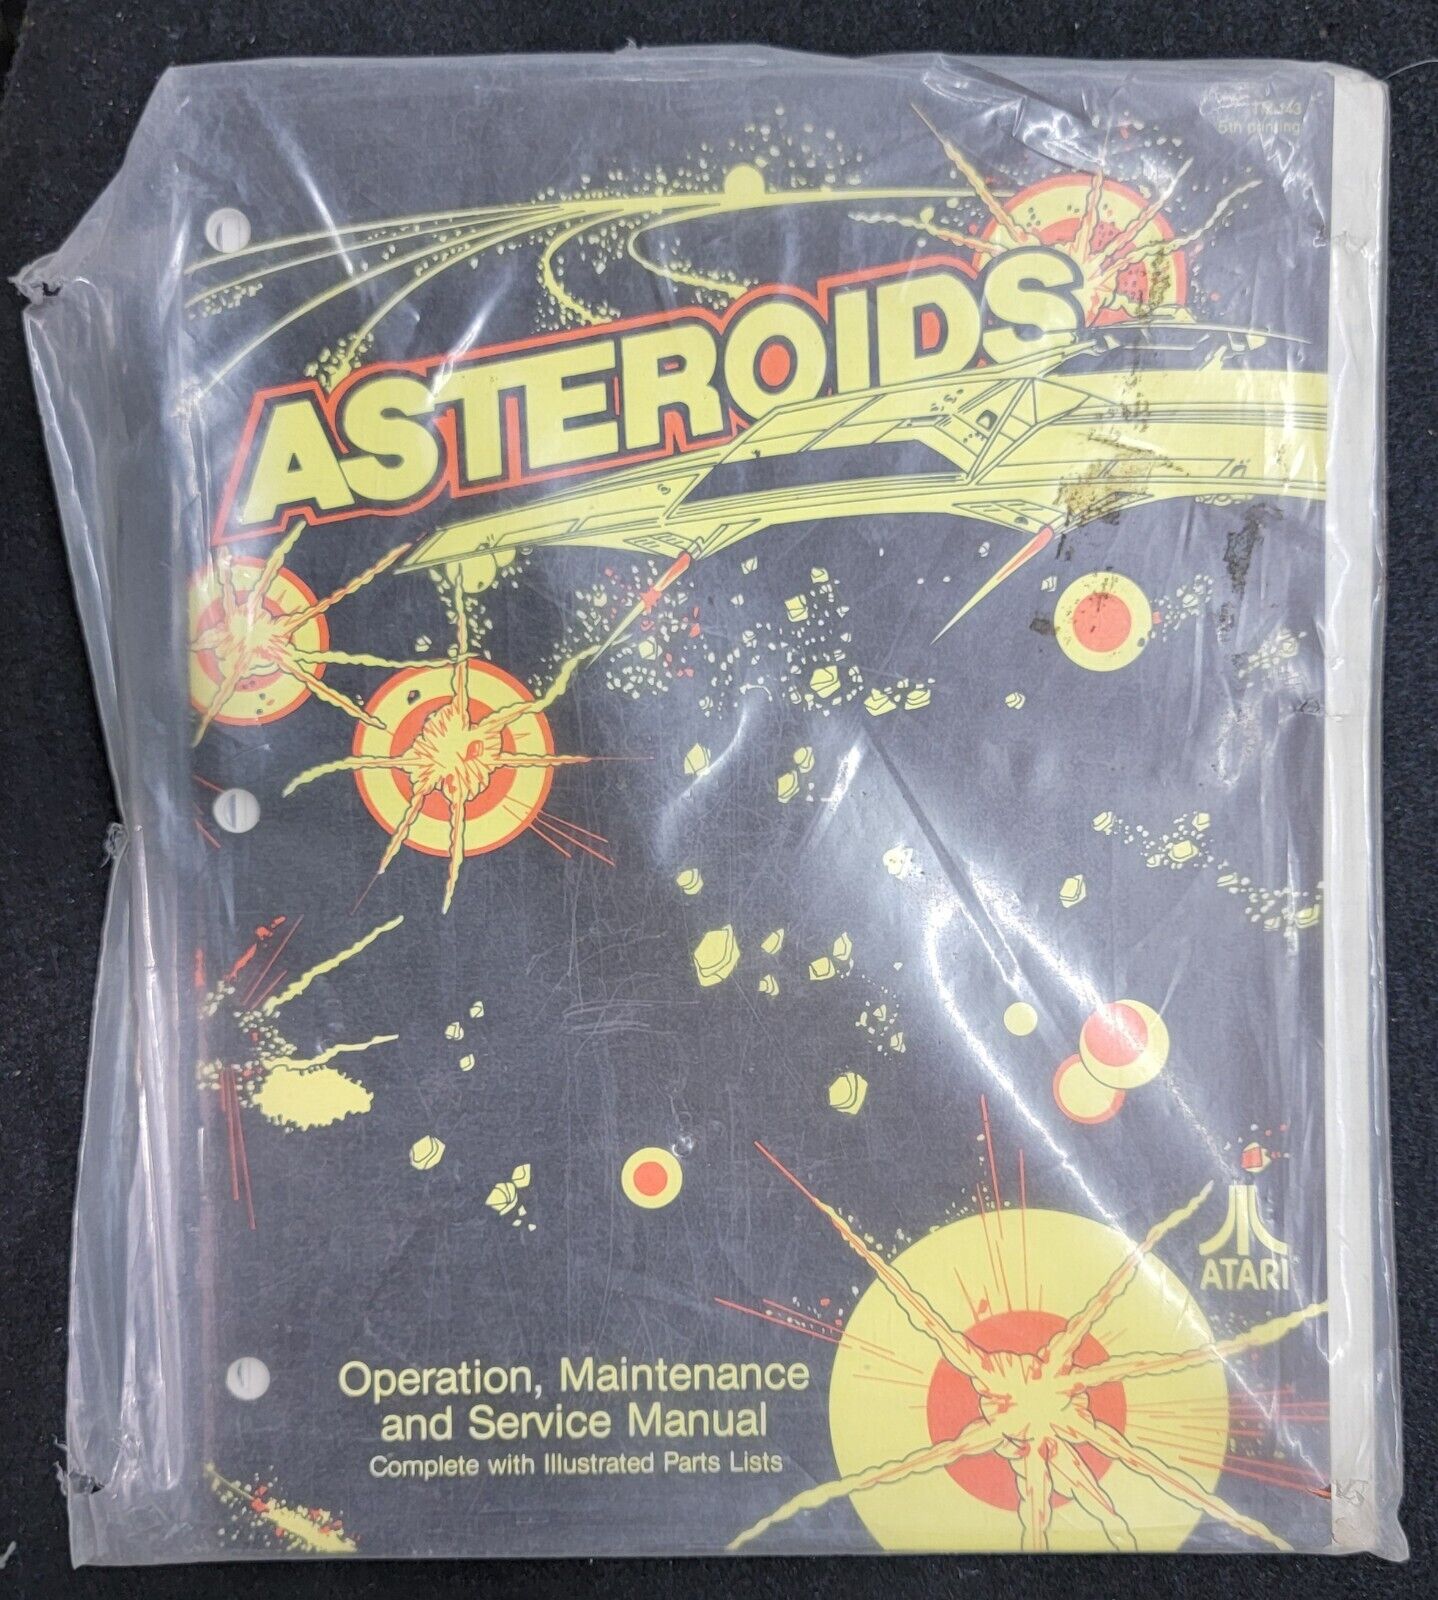 Atari Asteroids Arcade Game Manual In Original Plastic Wrap - 5th Printing 1979